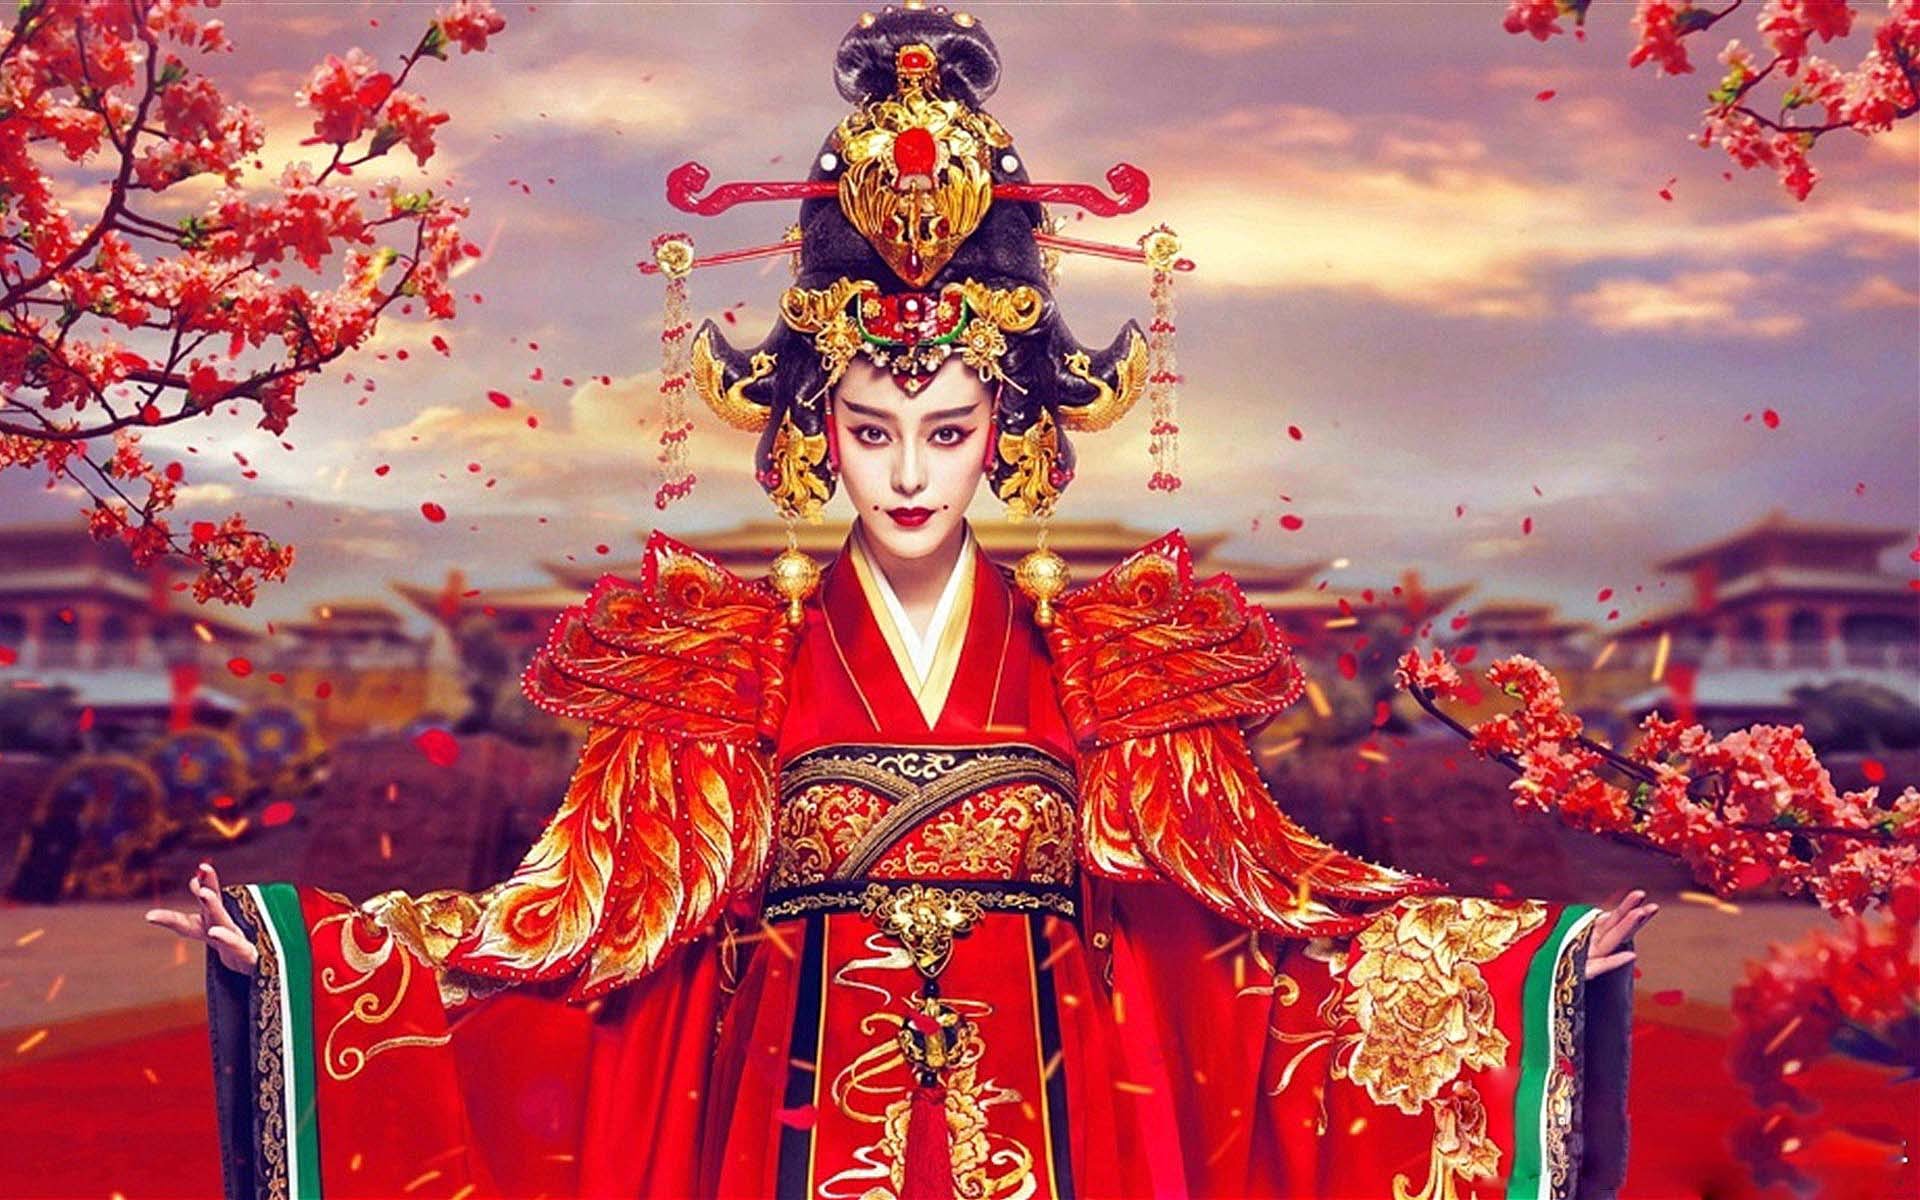 Bộ phim kể về cuộc đời của nàng Võ Tắc Thiên. Từ lúc bước vào cung cho đến khi ngồi lên ngai vàng trở thành nữ hoàng đế đầu tiên của Trung Hoa. Phim phát sóng vào 19h30 hàng ngày trên đài Hồ Nam Trung Quốc, mỗi ngày phát sóng 3 tập (Riêng thứ 6 và thứ 7 chỉ phát sóng mỗi ngày 1 tập).